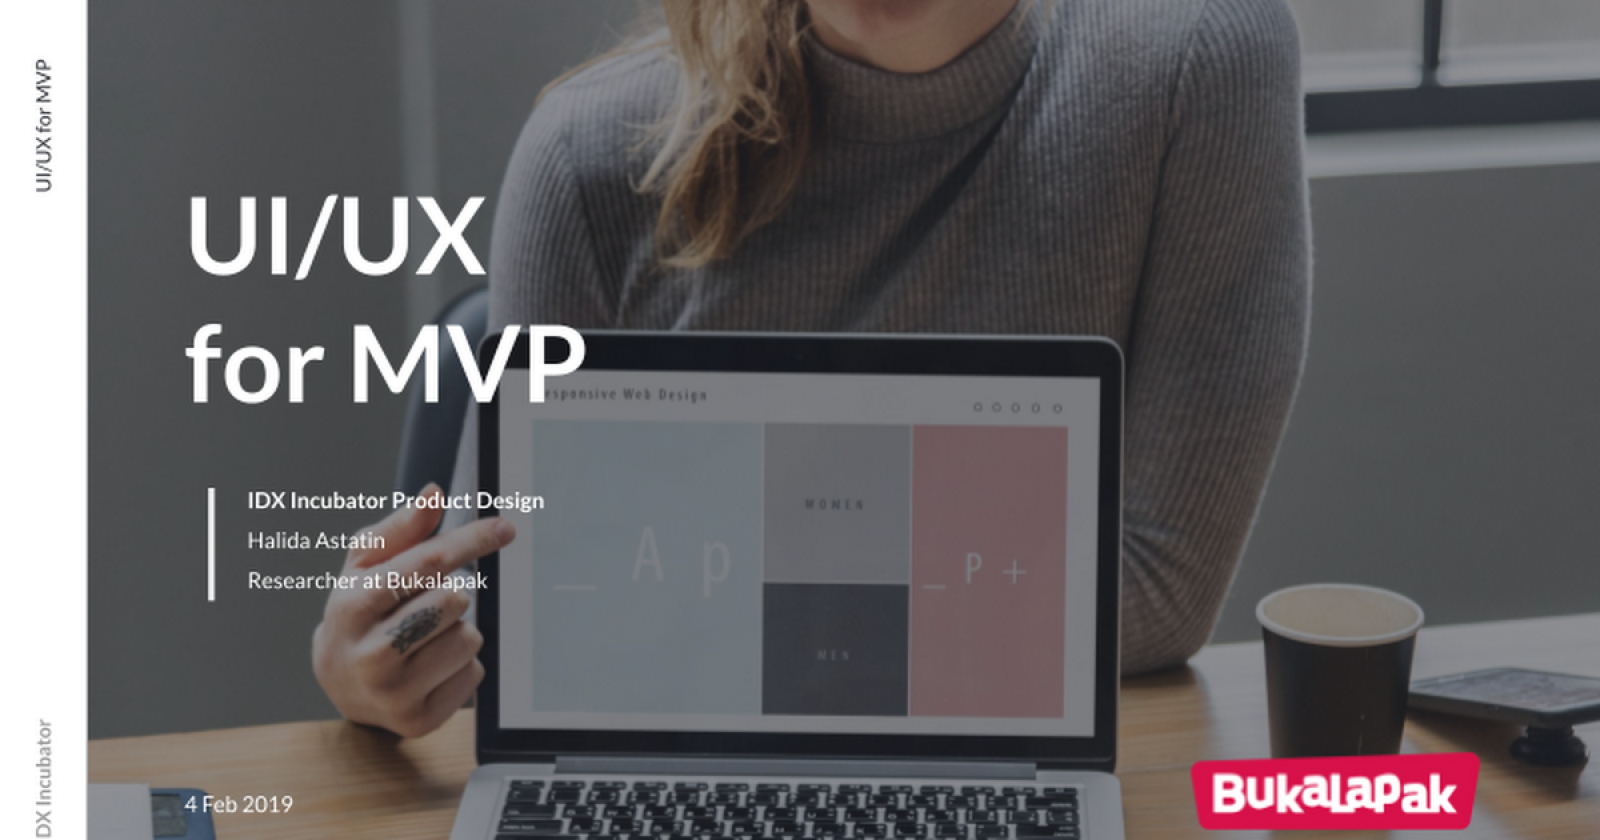 UI/UX for MVP